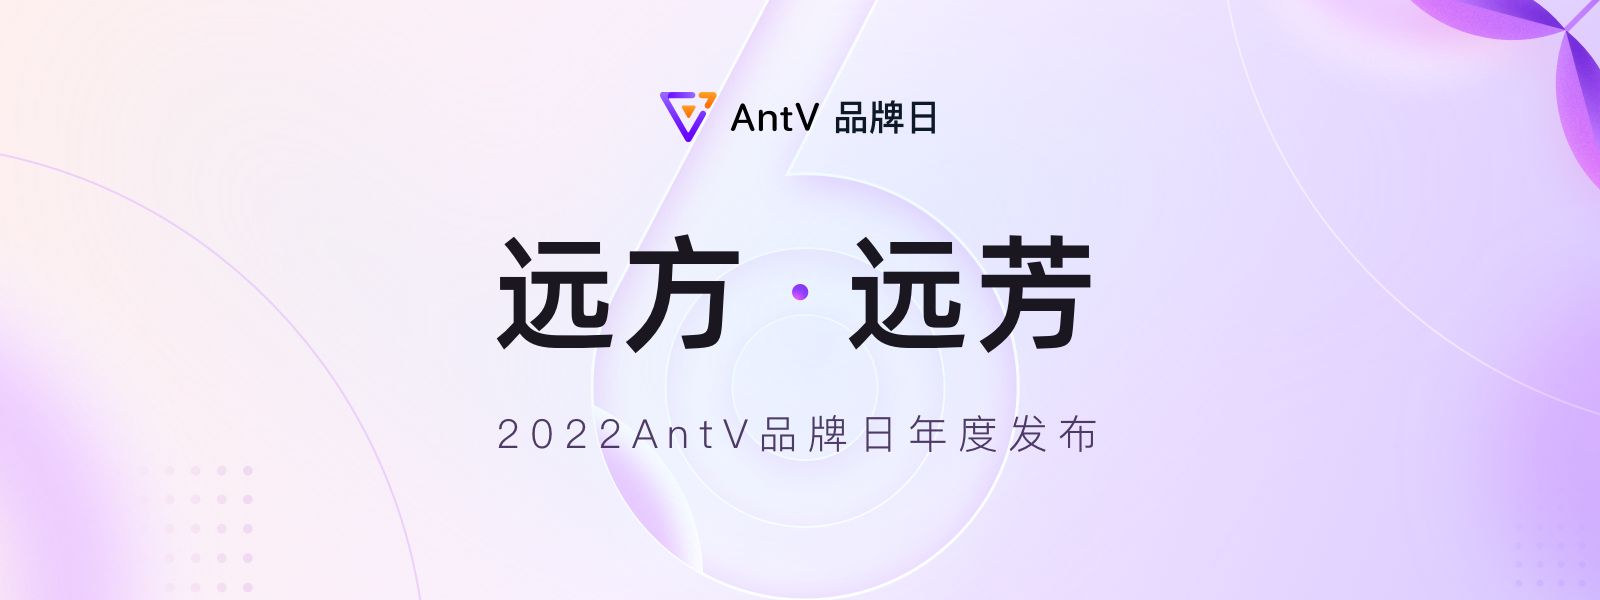 远方 · 远芳 AntV 2022 年度发布-烟雨网